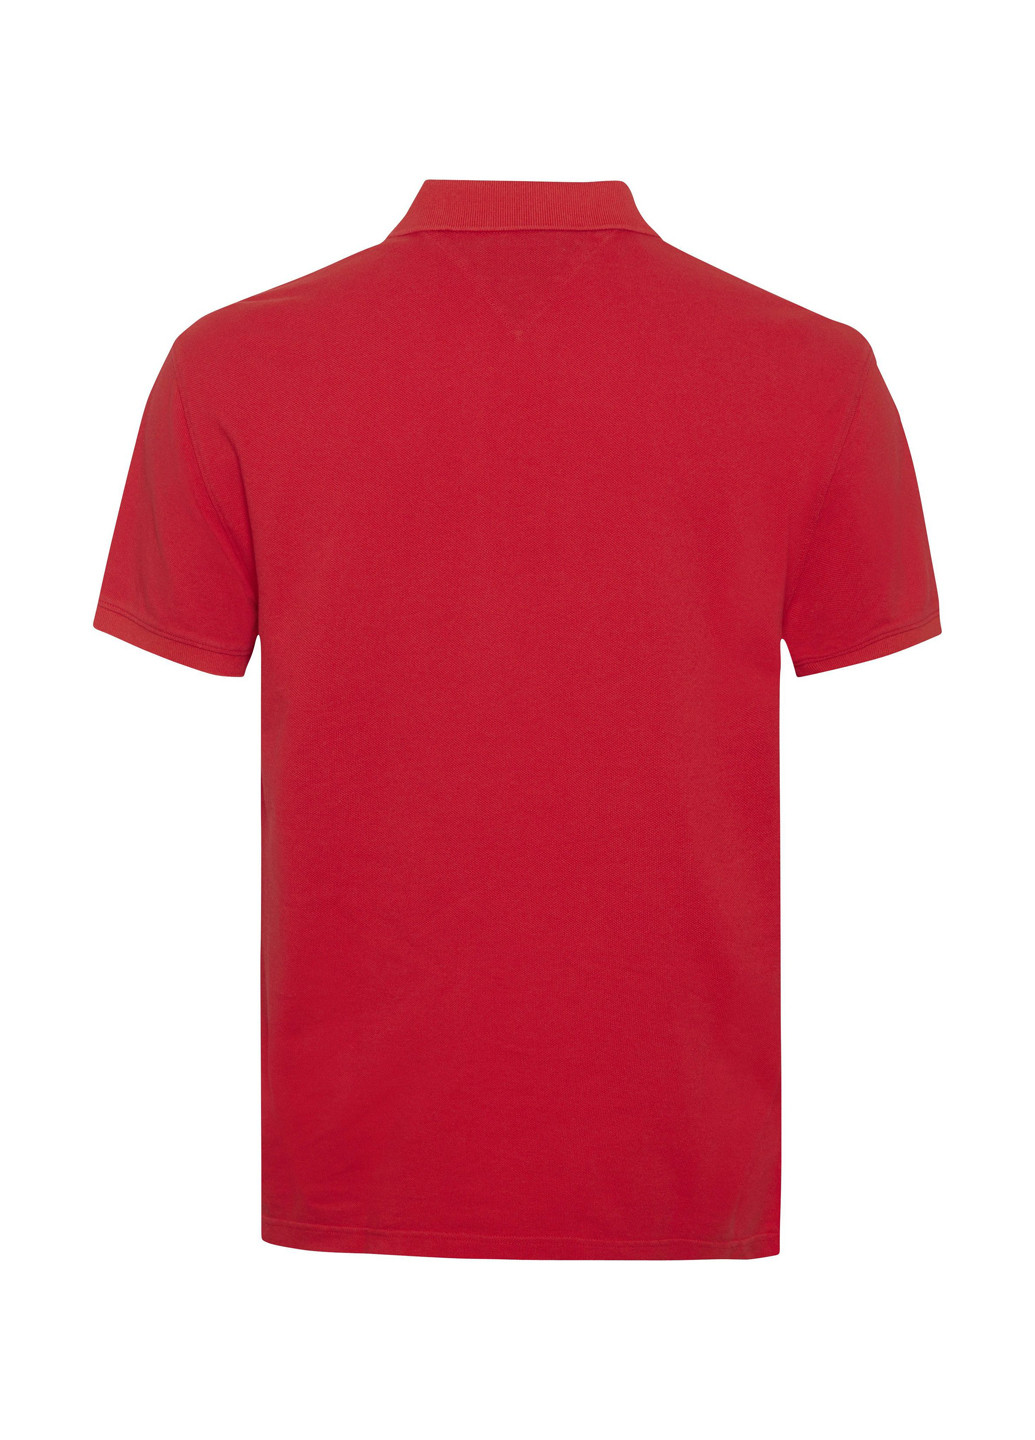 Красная футболка-поло для мужчин Tommy Hilfiger с надписью